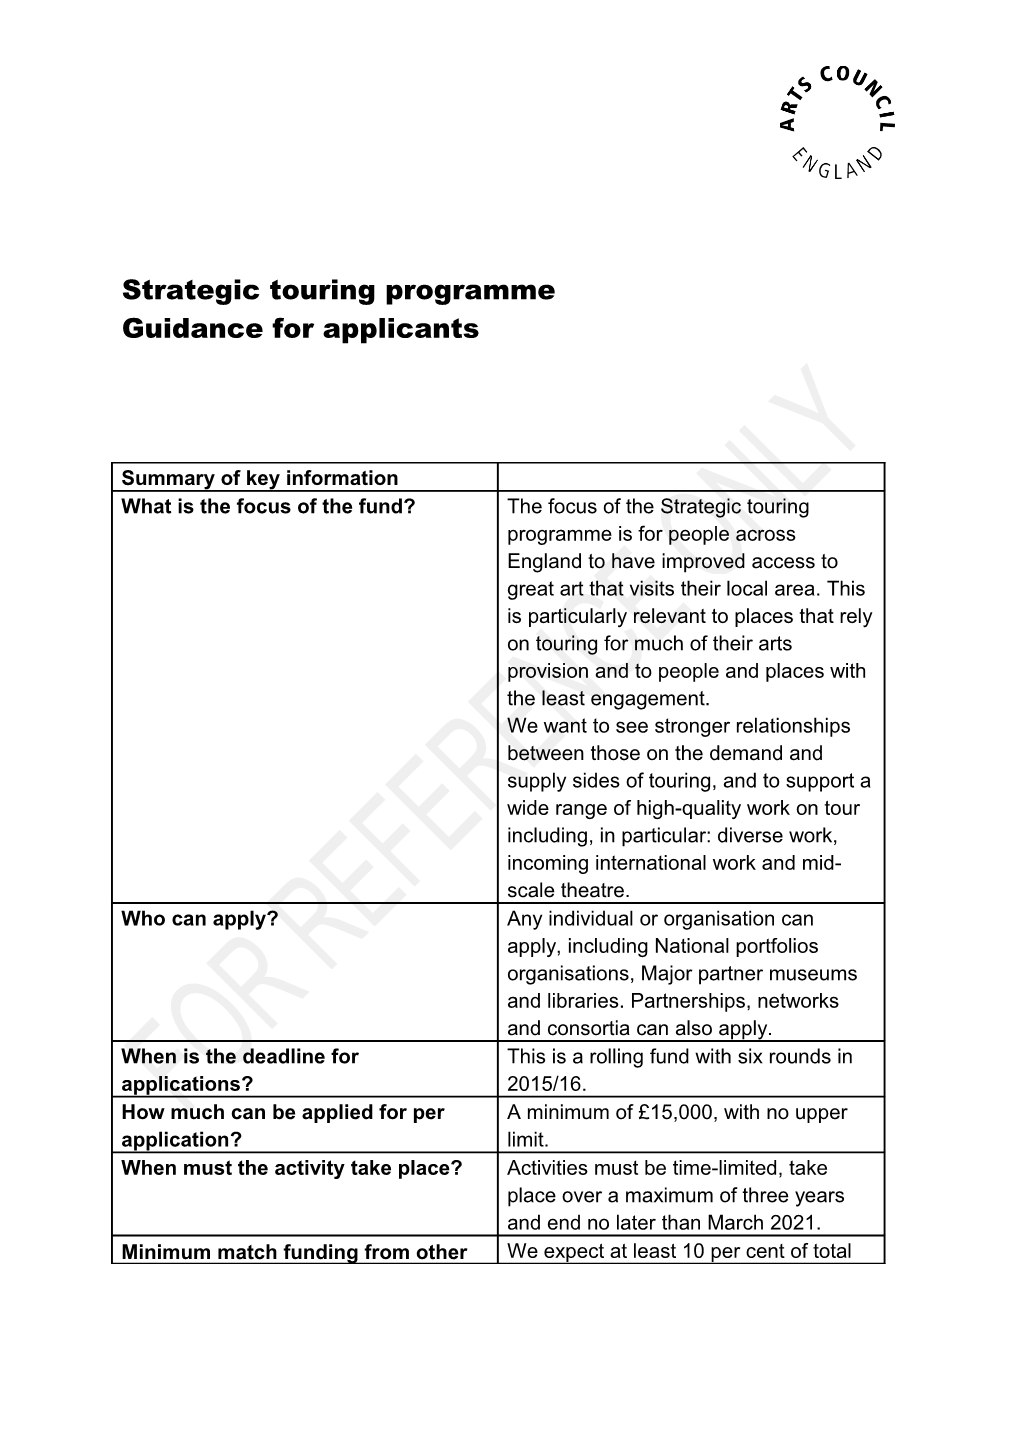 Strategic Touring Programme